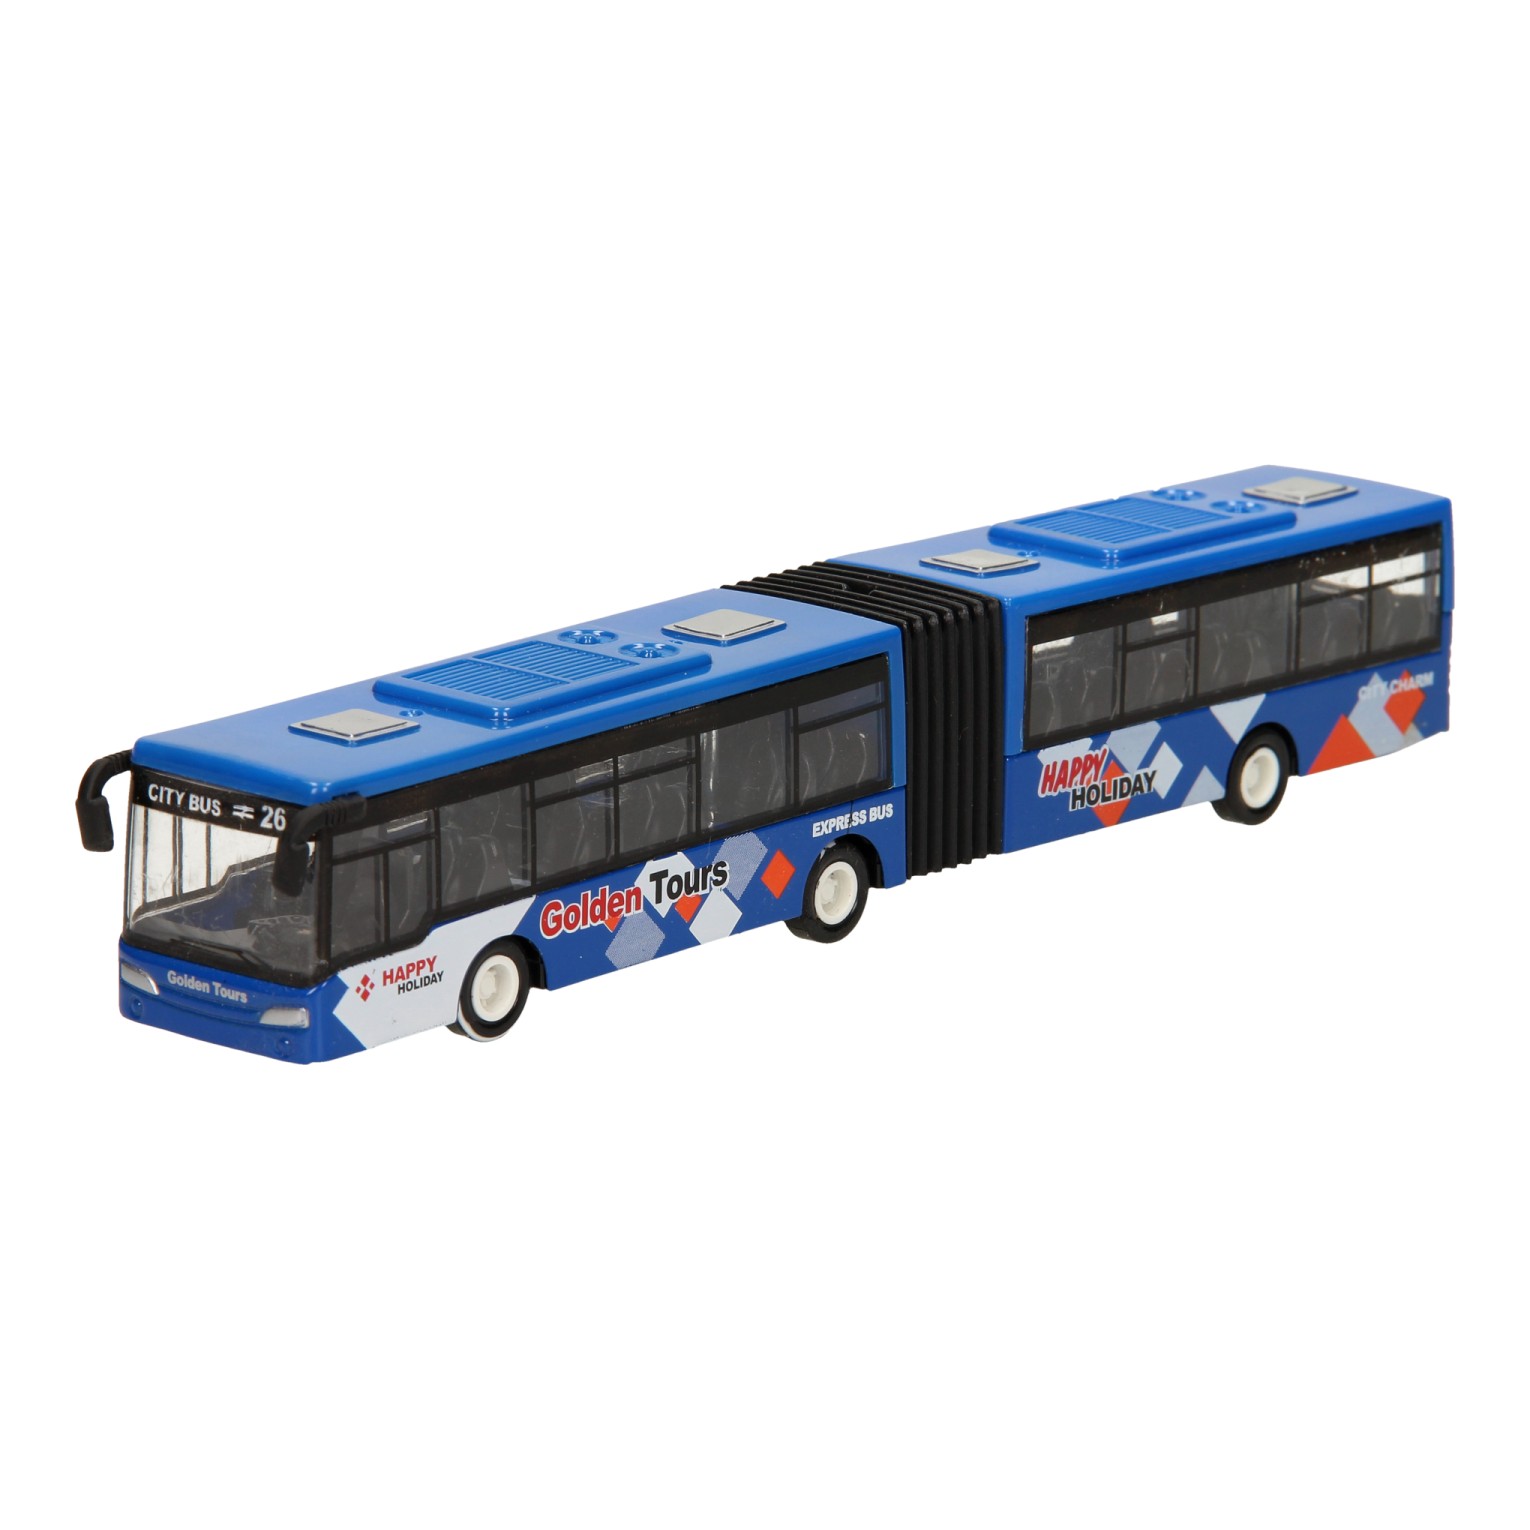 Inademen Verslaggever handboeien Metalen Bus - Blauw | Thimble Toys